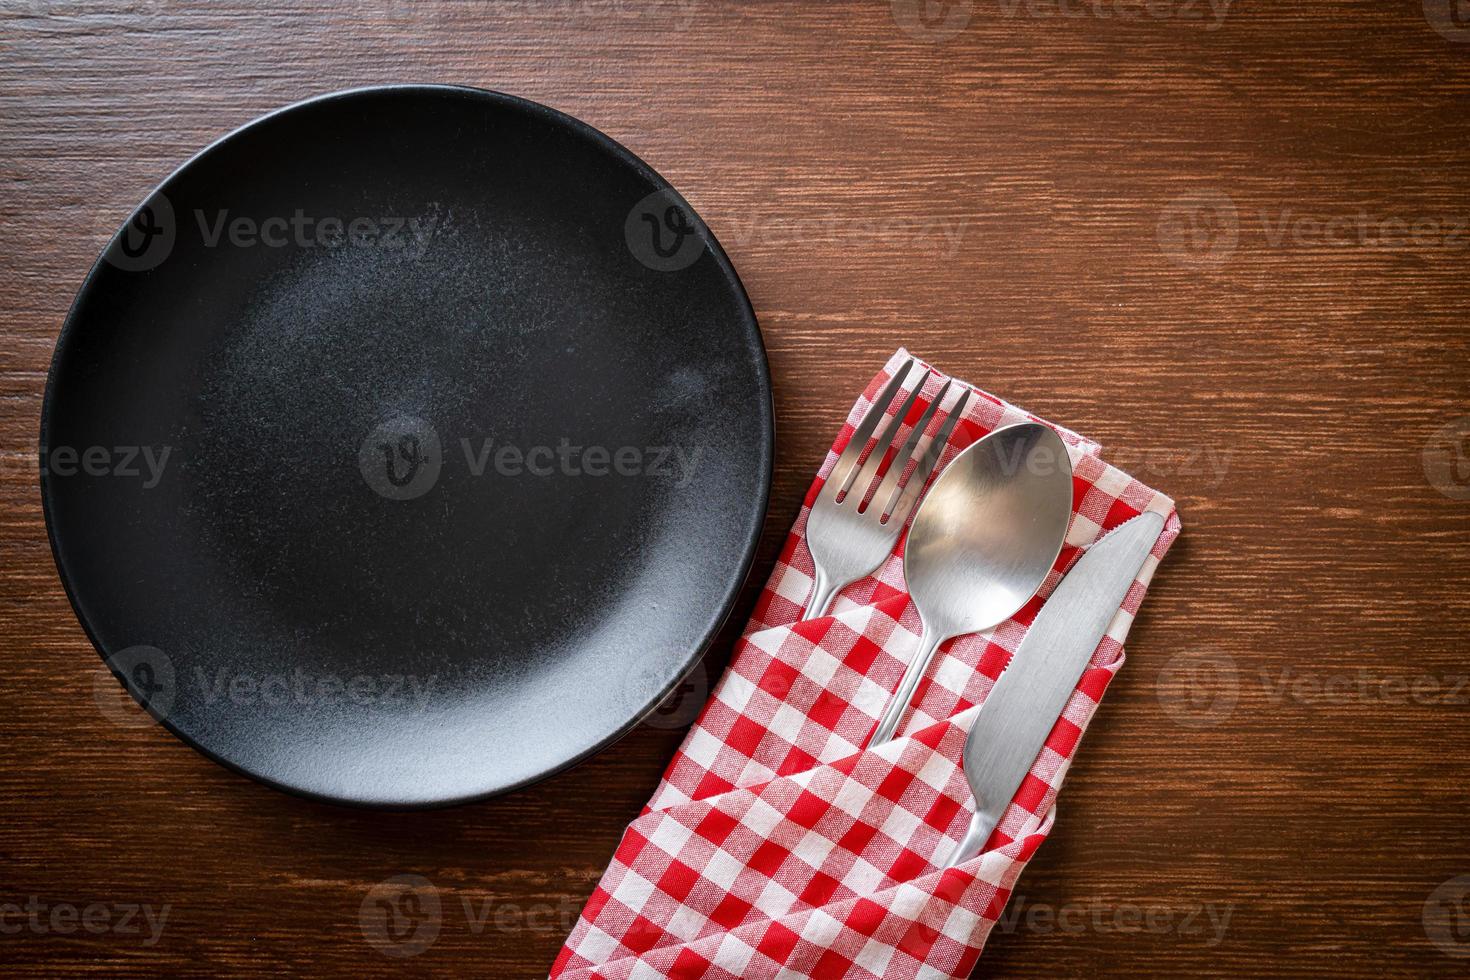 prato vazio ou prato com faca, garfo e colher no fundo de ladrilhos de madeira foto